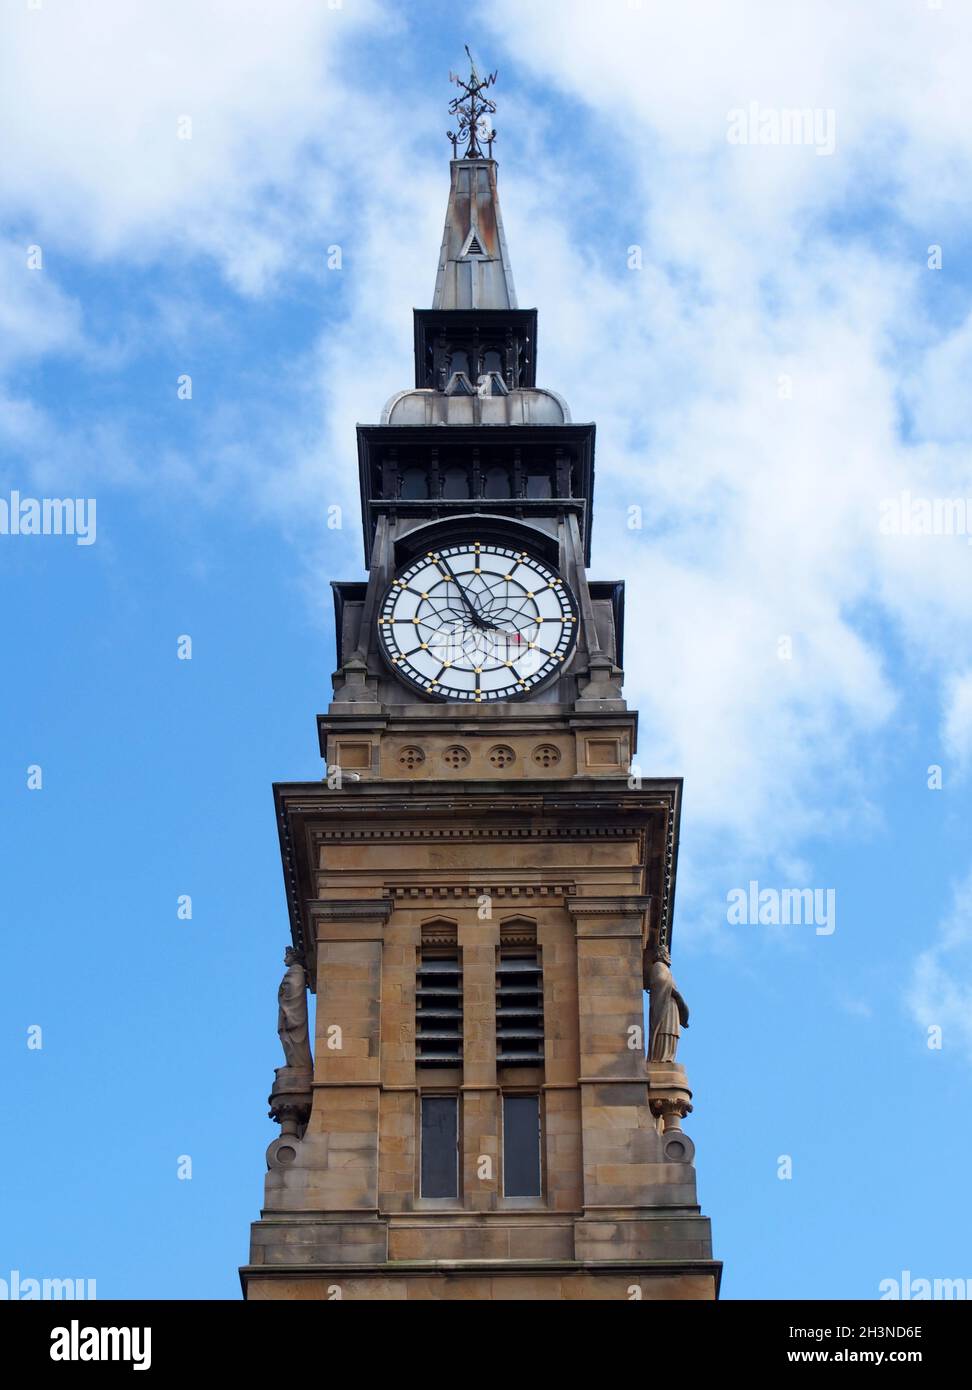 La torre dell'orologio dello storico edificio vittoriano atkinson a southport merseyside contro un cielo blu estivo Foto Stock